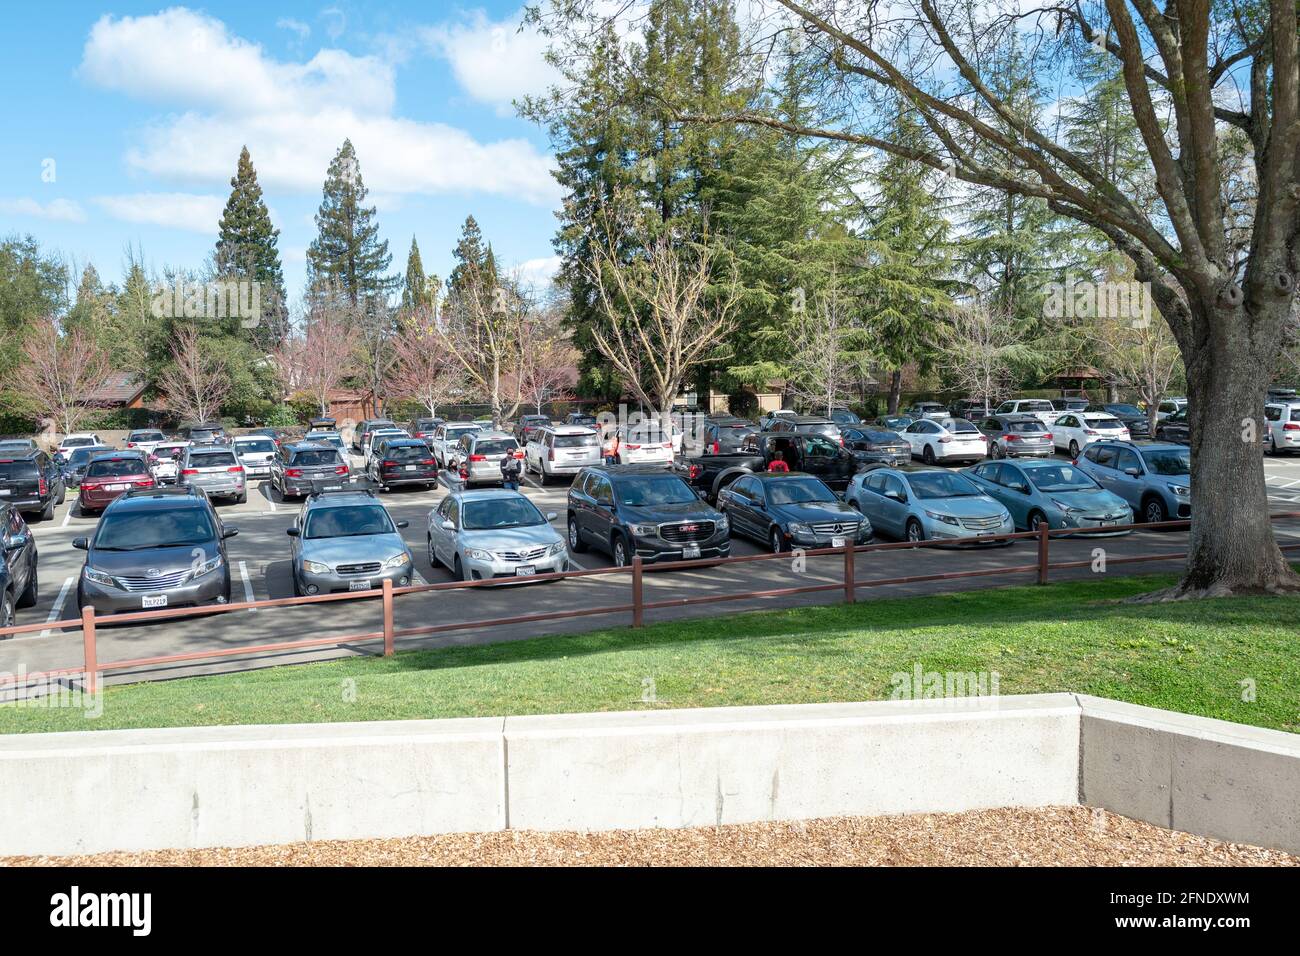 Le premier jour du printemps dans la région de la baie de San Francisco, à Danville, en Californie, le parc de stationnement était complet à Osage Station Park, car beaucoup de personnes se sont rassemblées à l'extérieur, le 20 mars 2021. () Banque D'Images